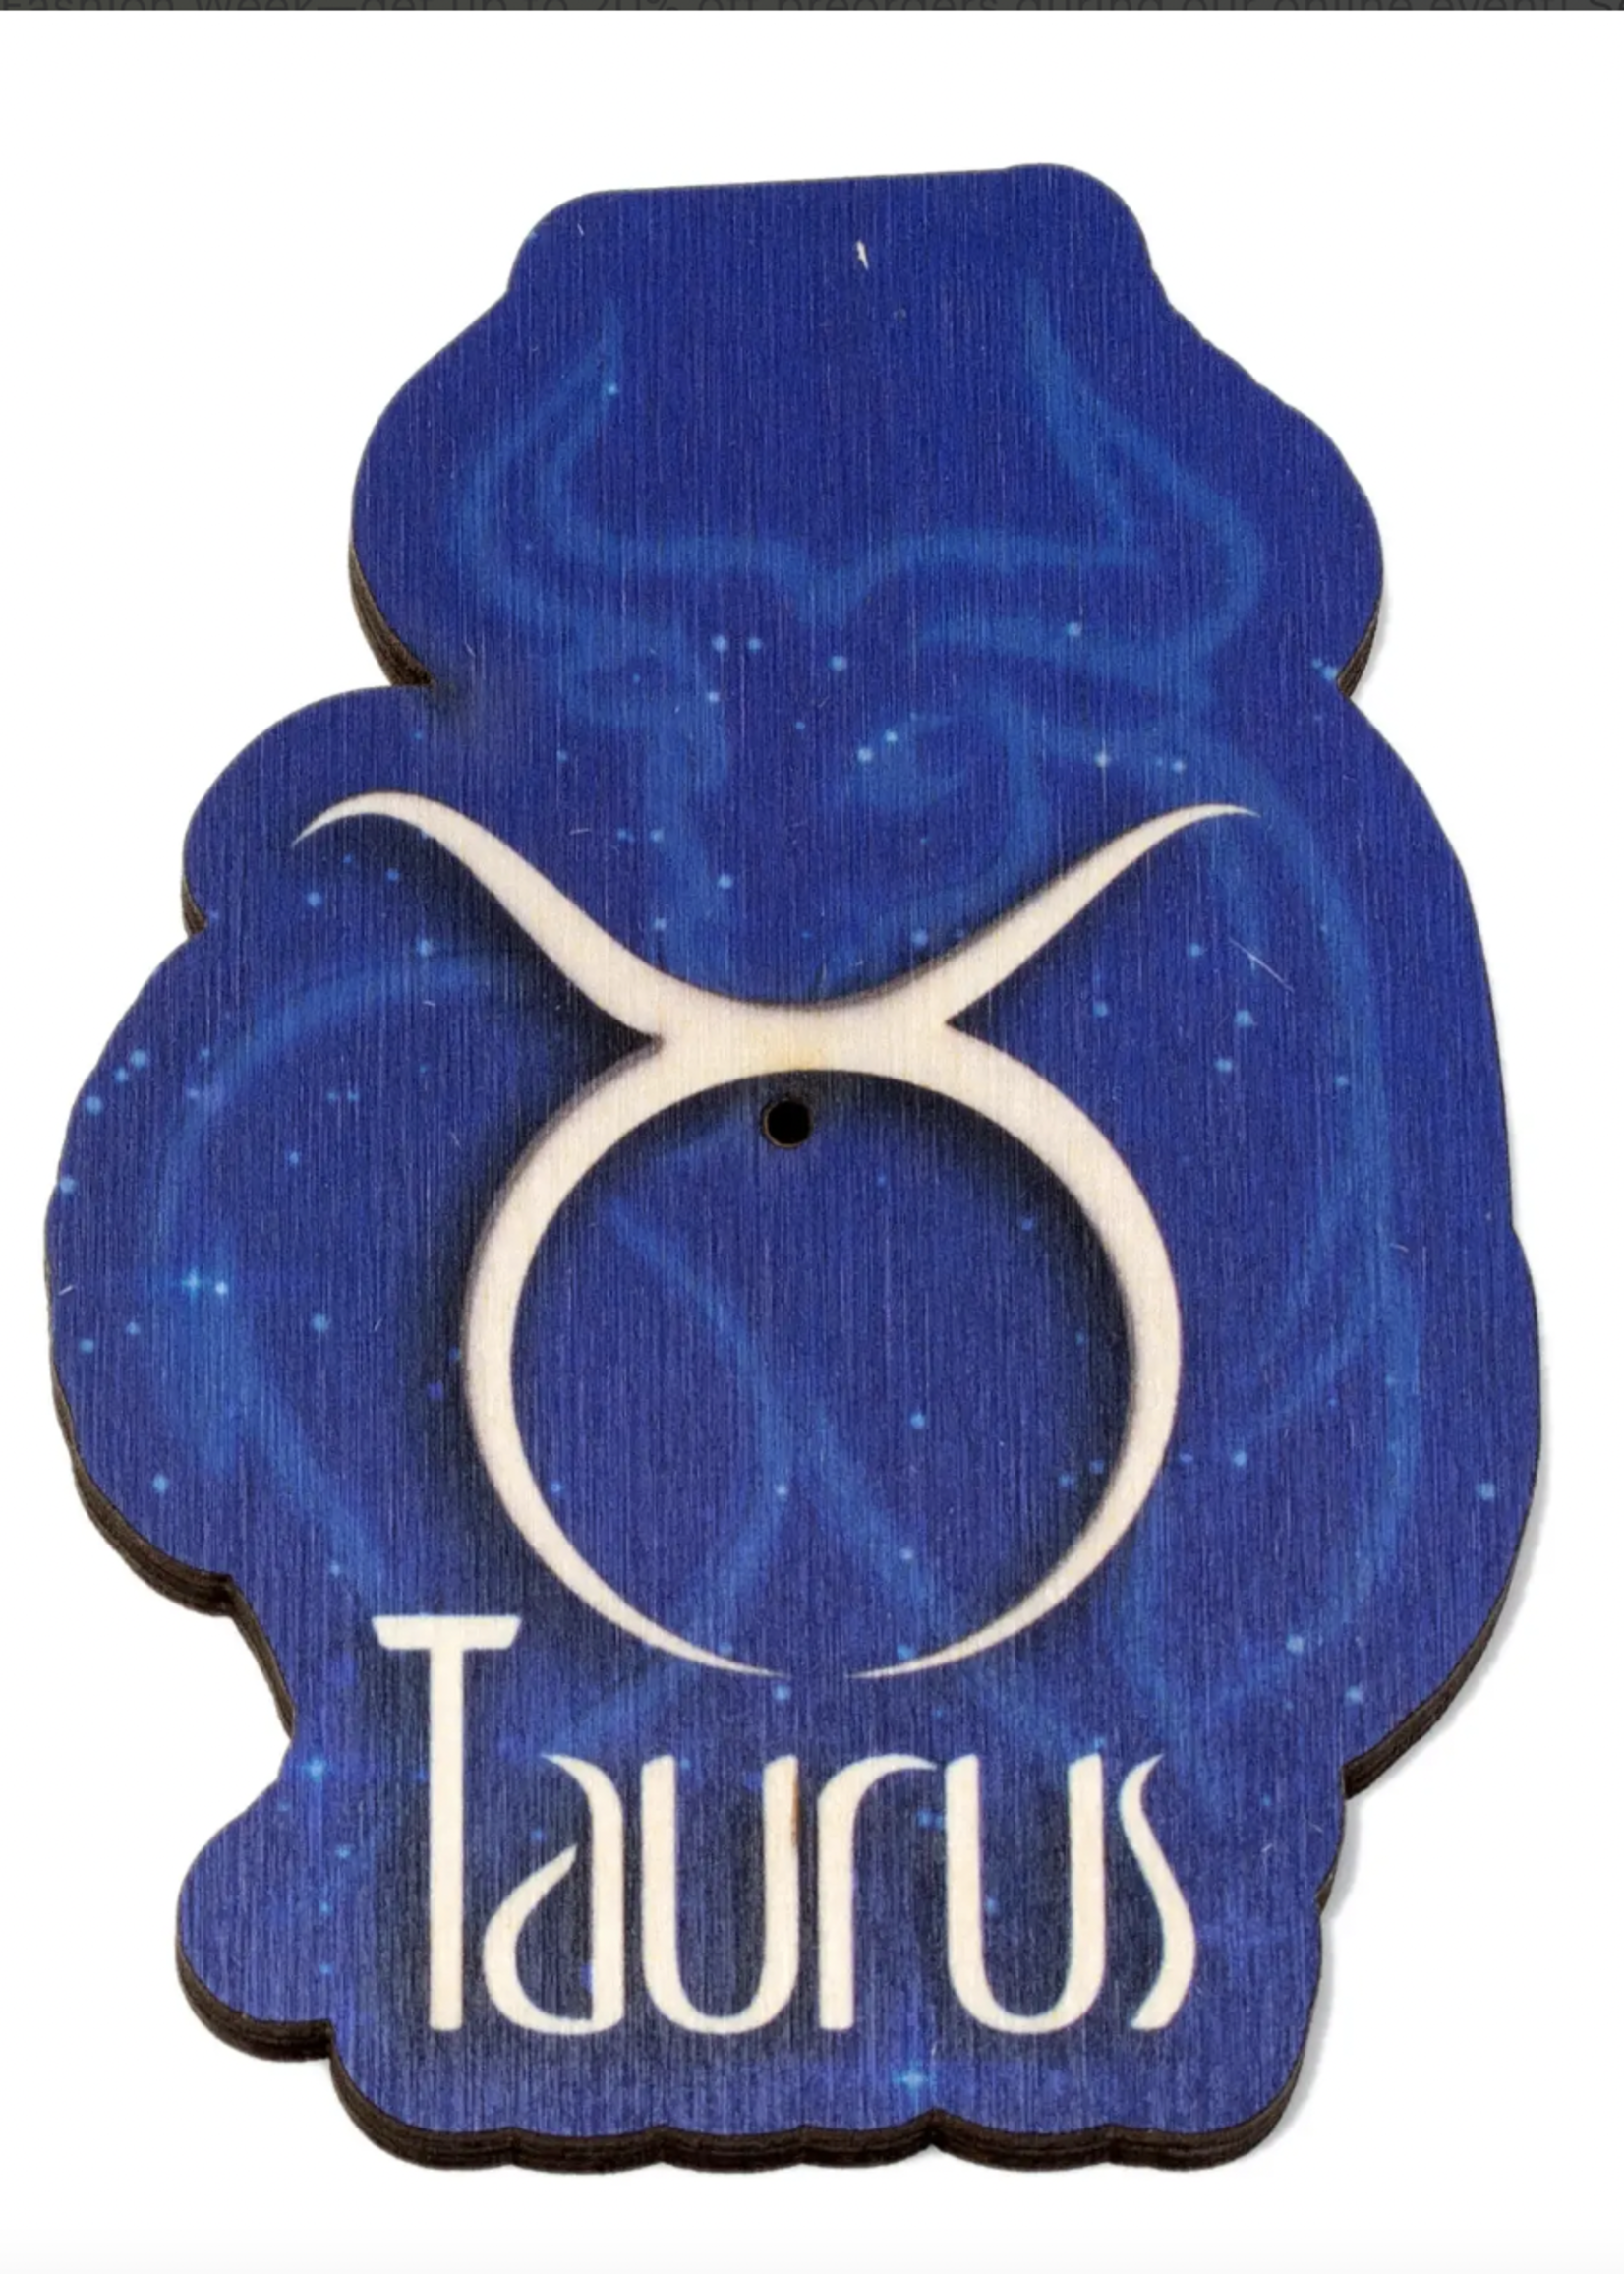 Most Amazing Taurus Wooden Keychain